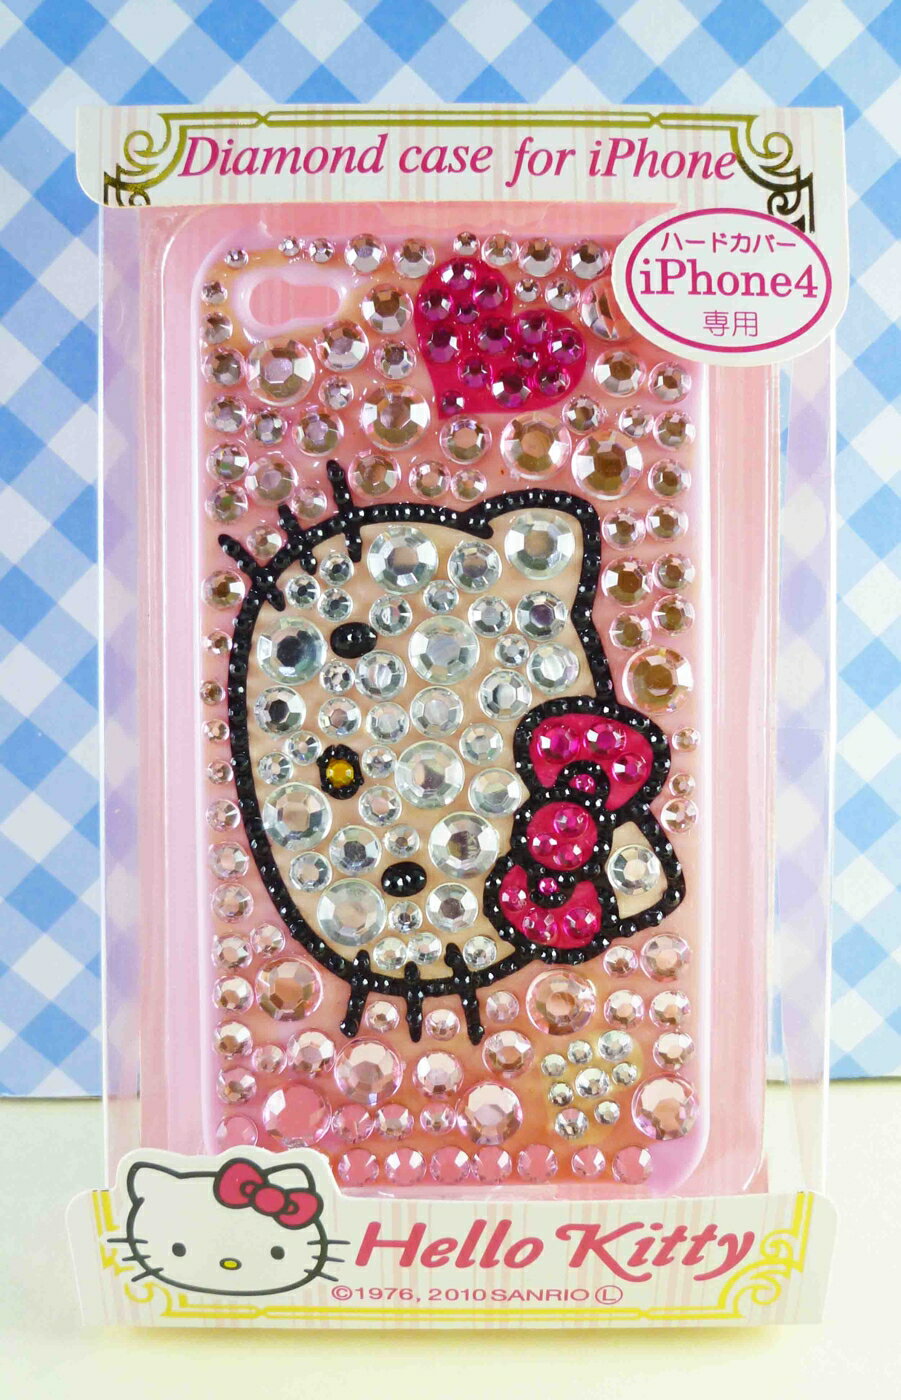 【震撼精品百貨】Hello Kitty 凱蒂貓 HELLO KITTY iPhone4貼鑽手機殼-粉大頭 震撼日式精品百貨